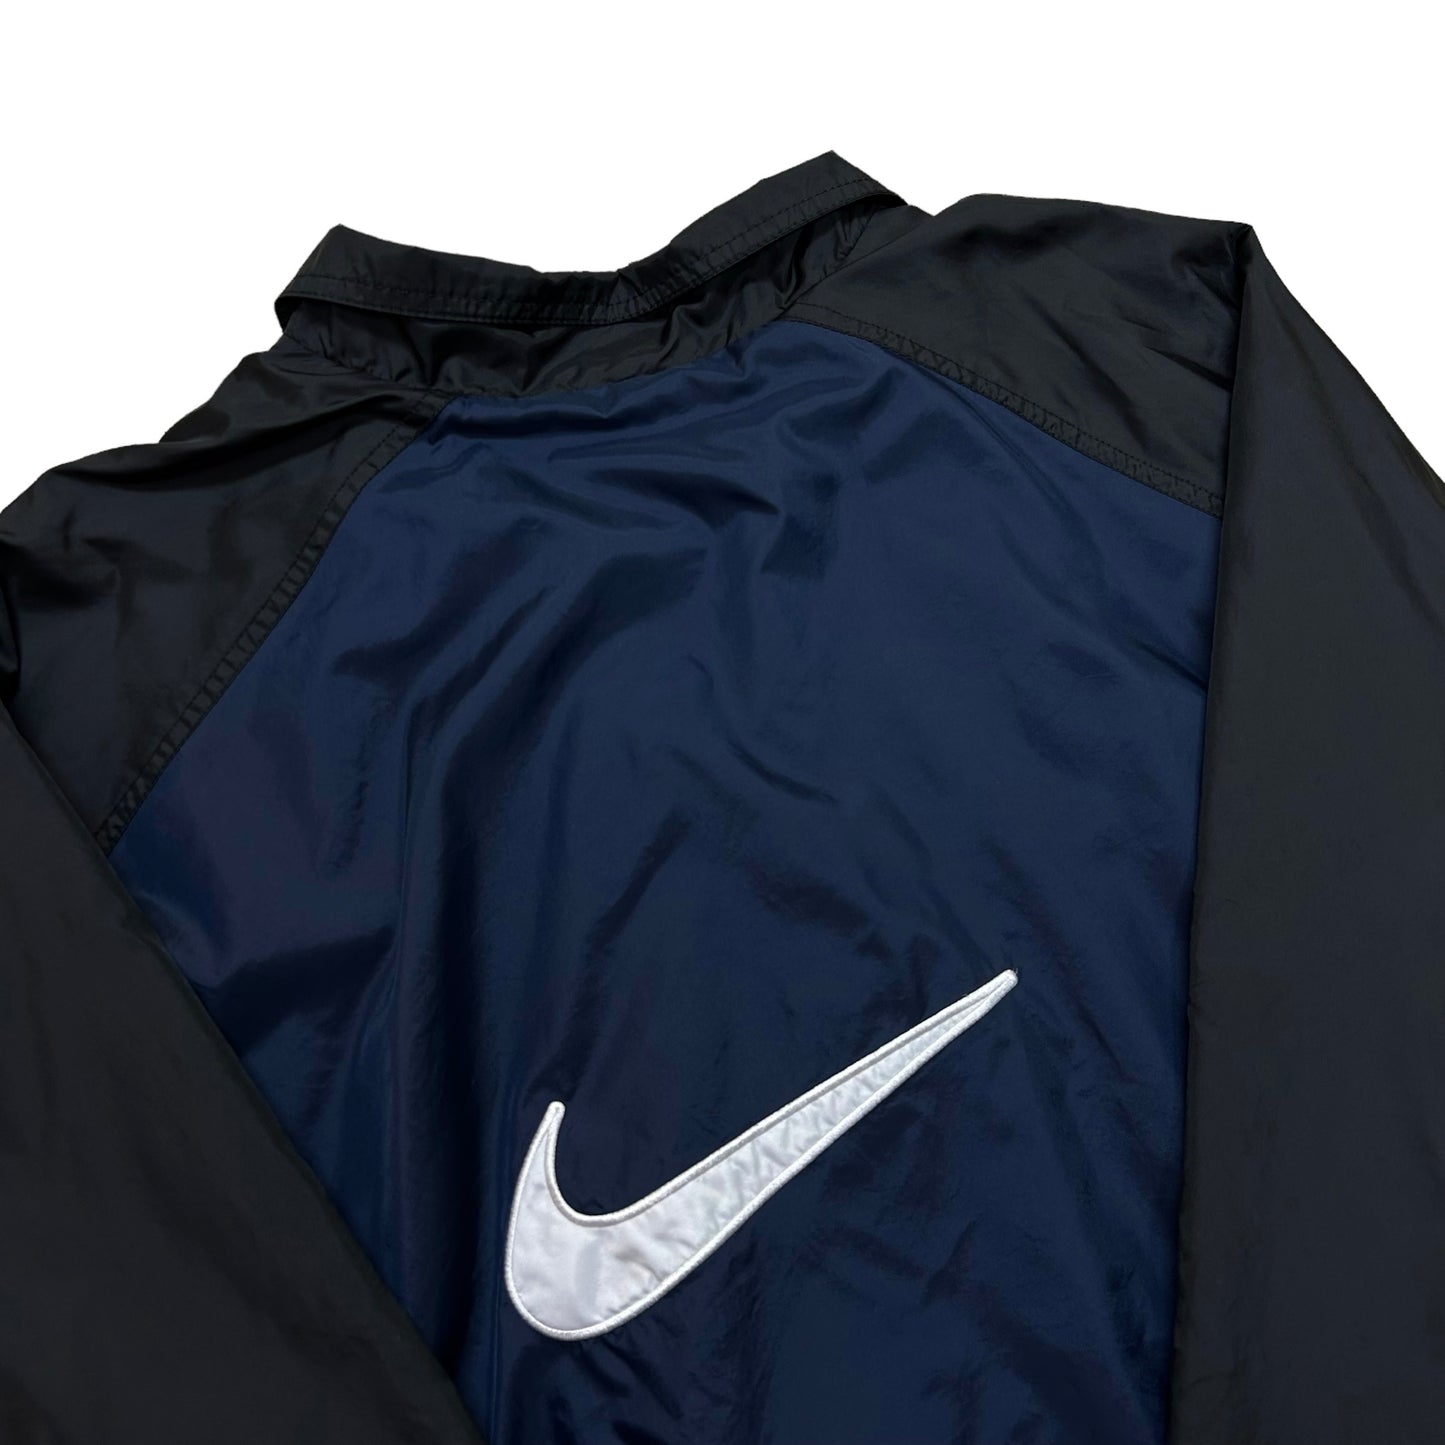 Vintage Y2K Nike Navy Blue/Black Full-Zip Windbreaker Jacket - Size Medium